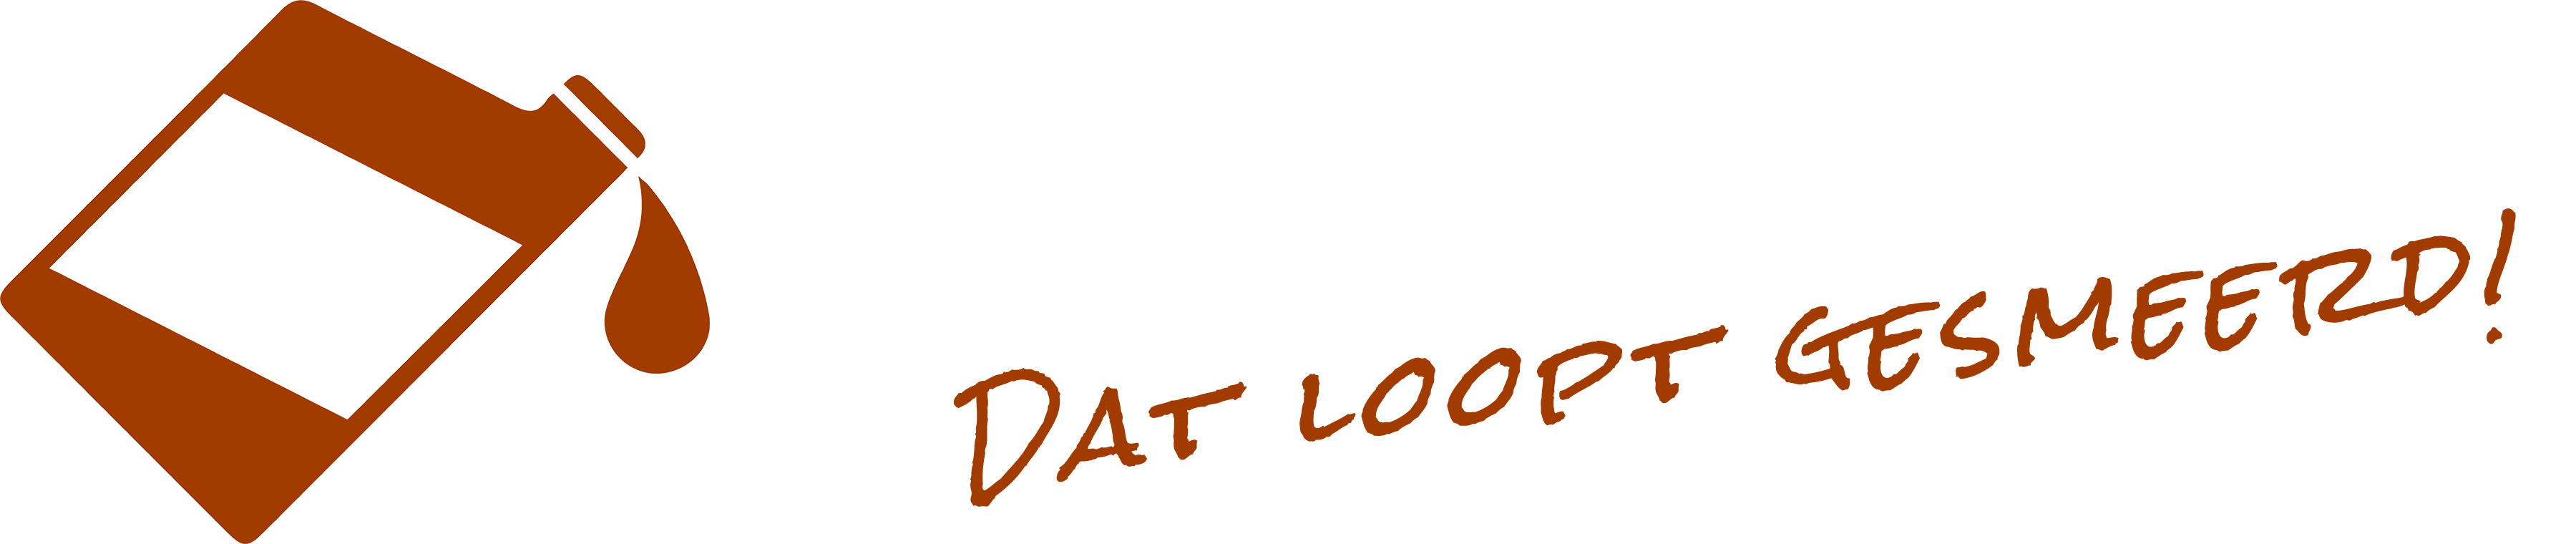 Direct Oil